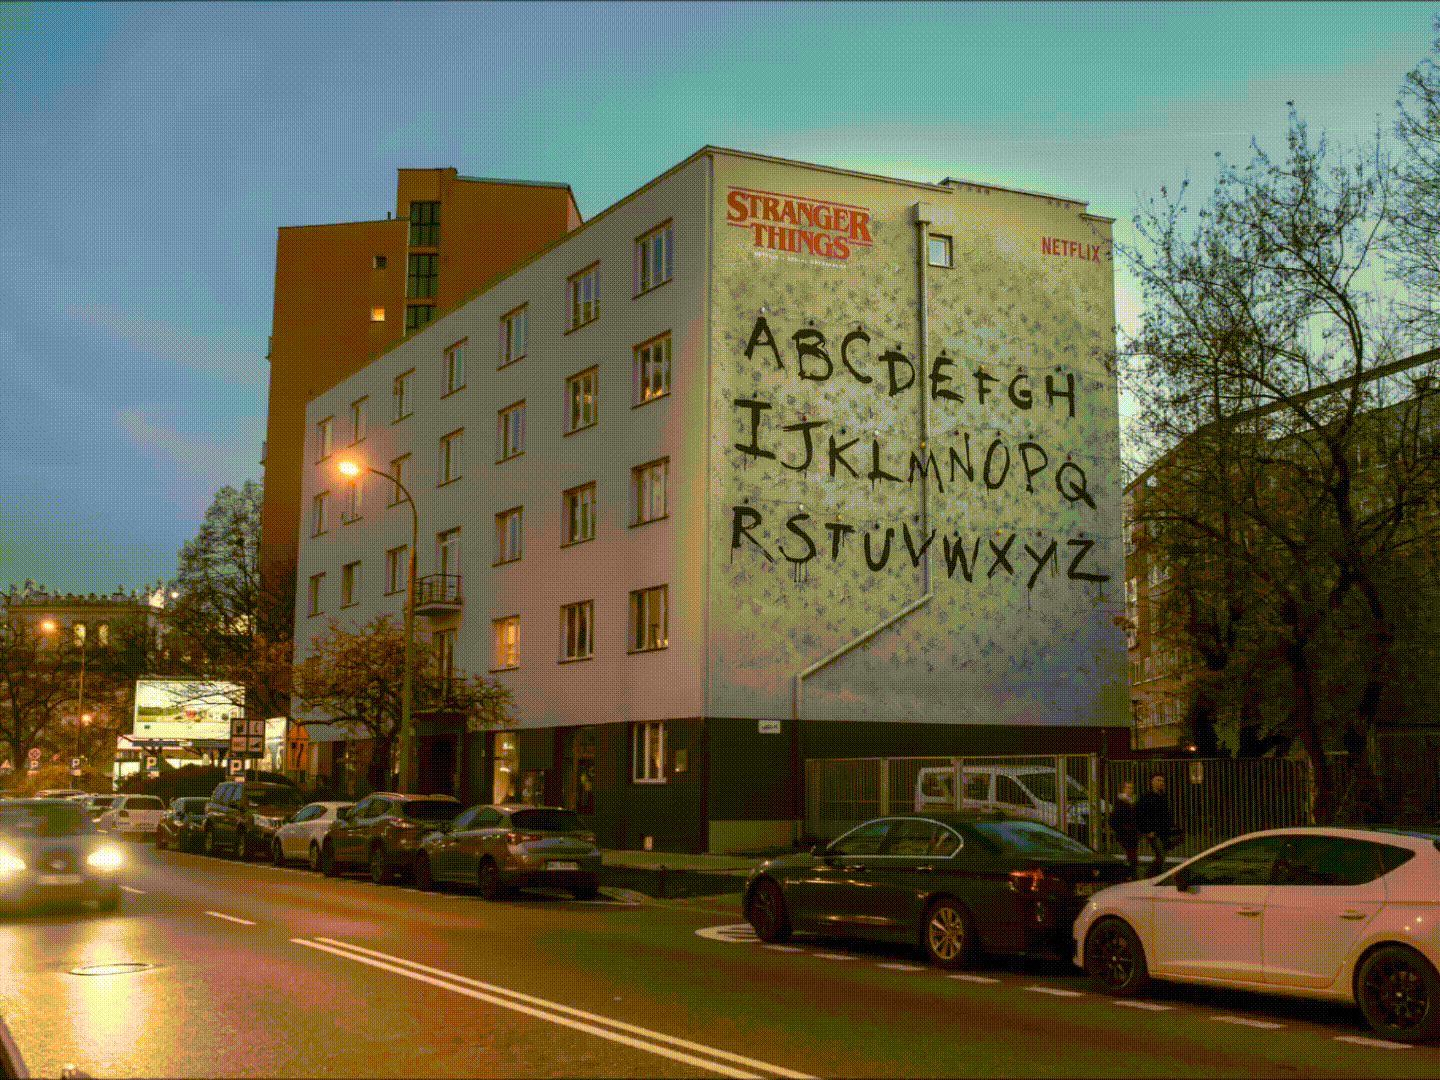 Advertising mural on solec street for netflix | Stranger Things | Portfolio